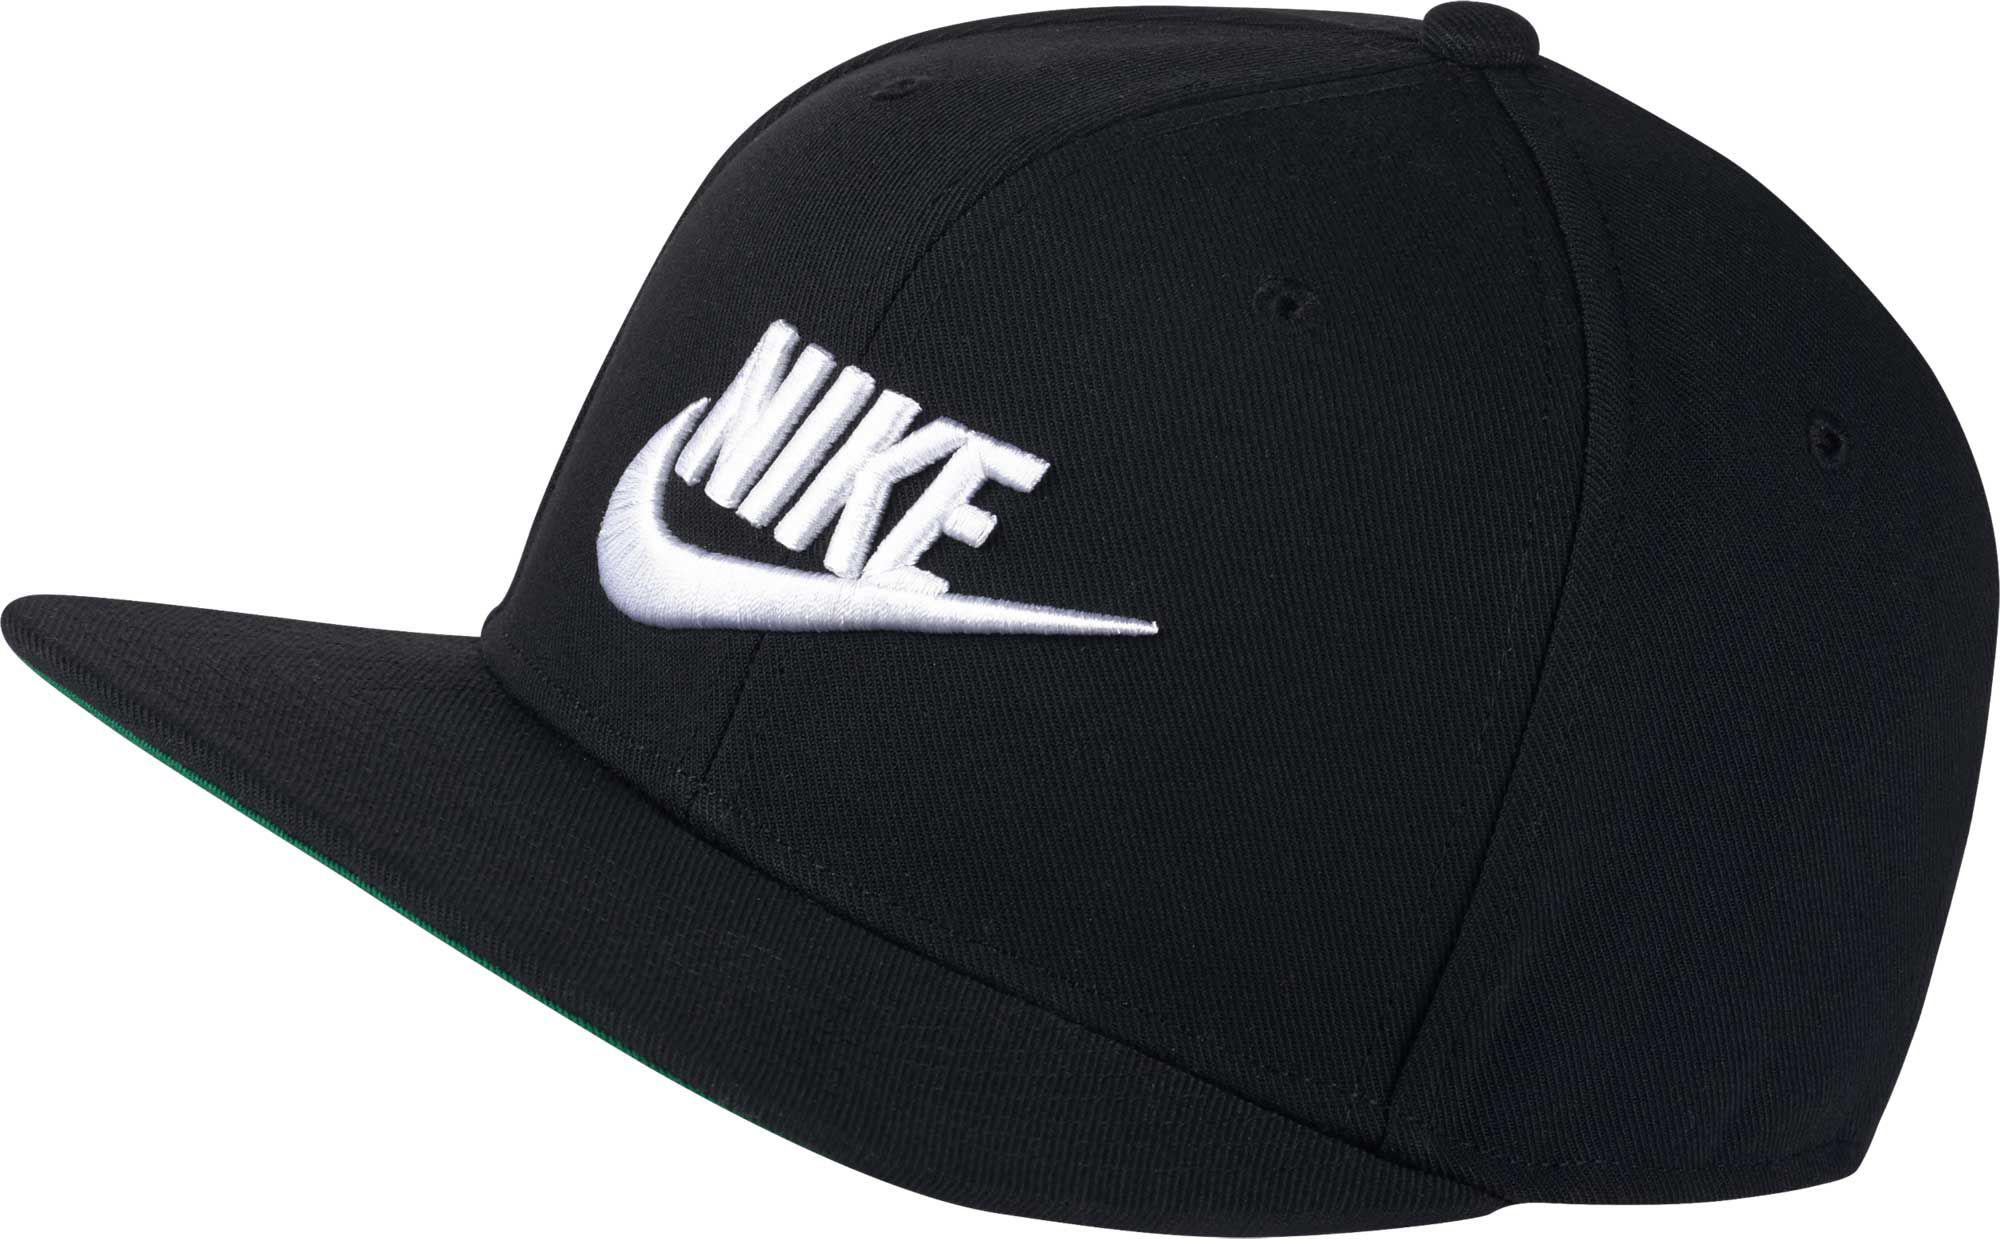 Nike Synthetic Sportswear Pro Adjustable Hat in Black/Black/White ...